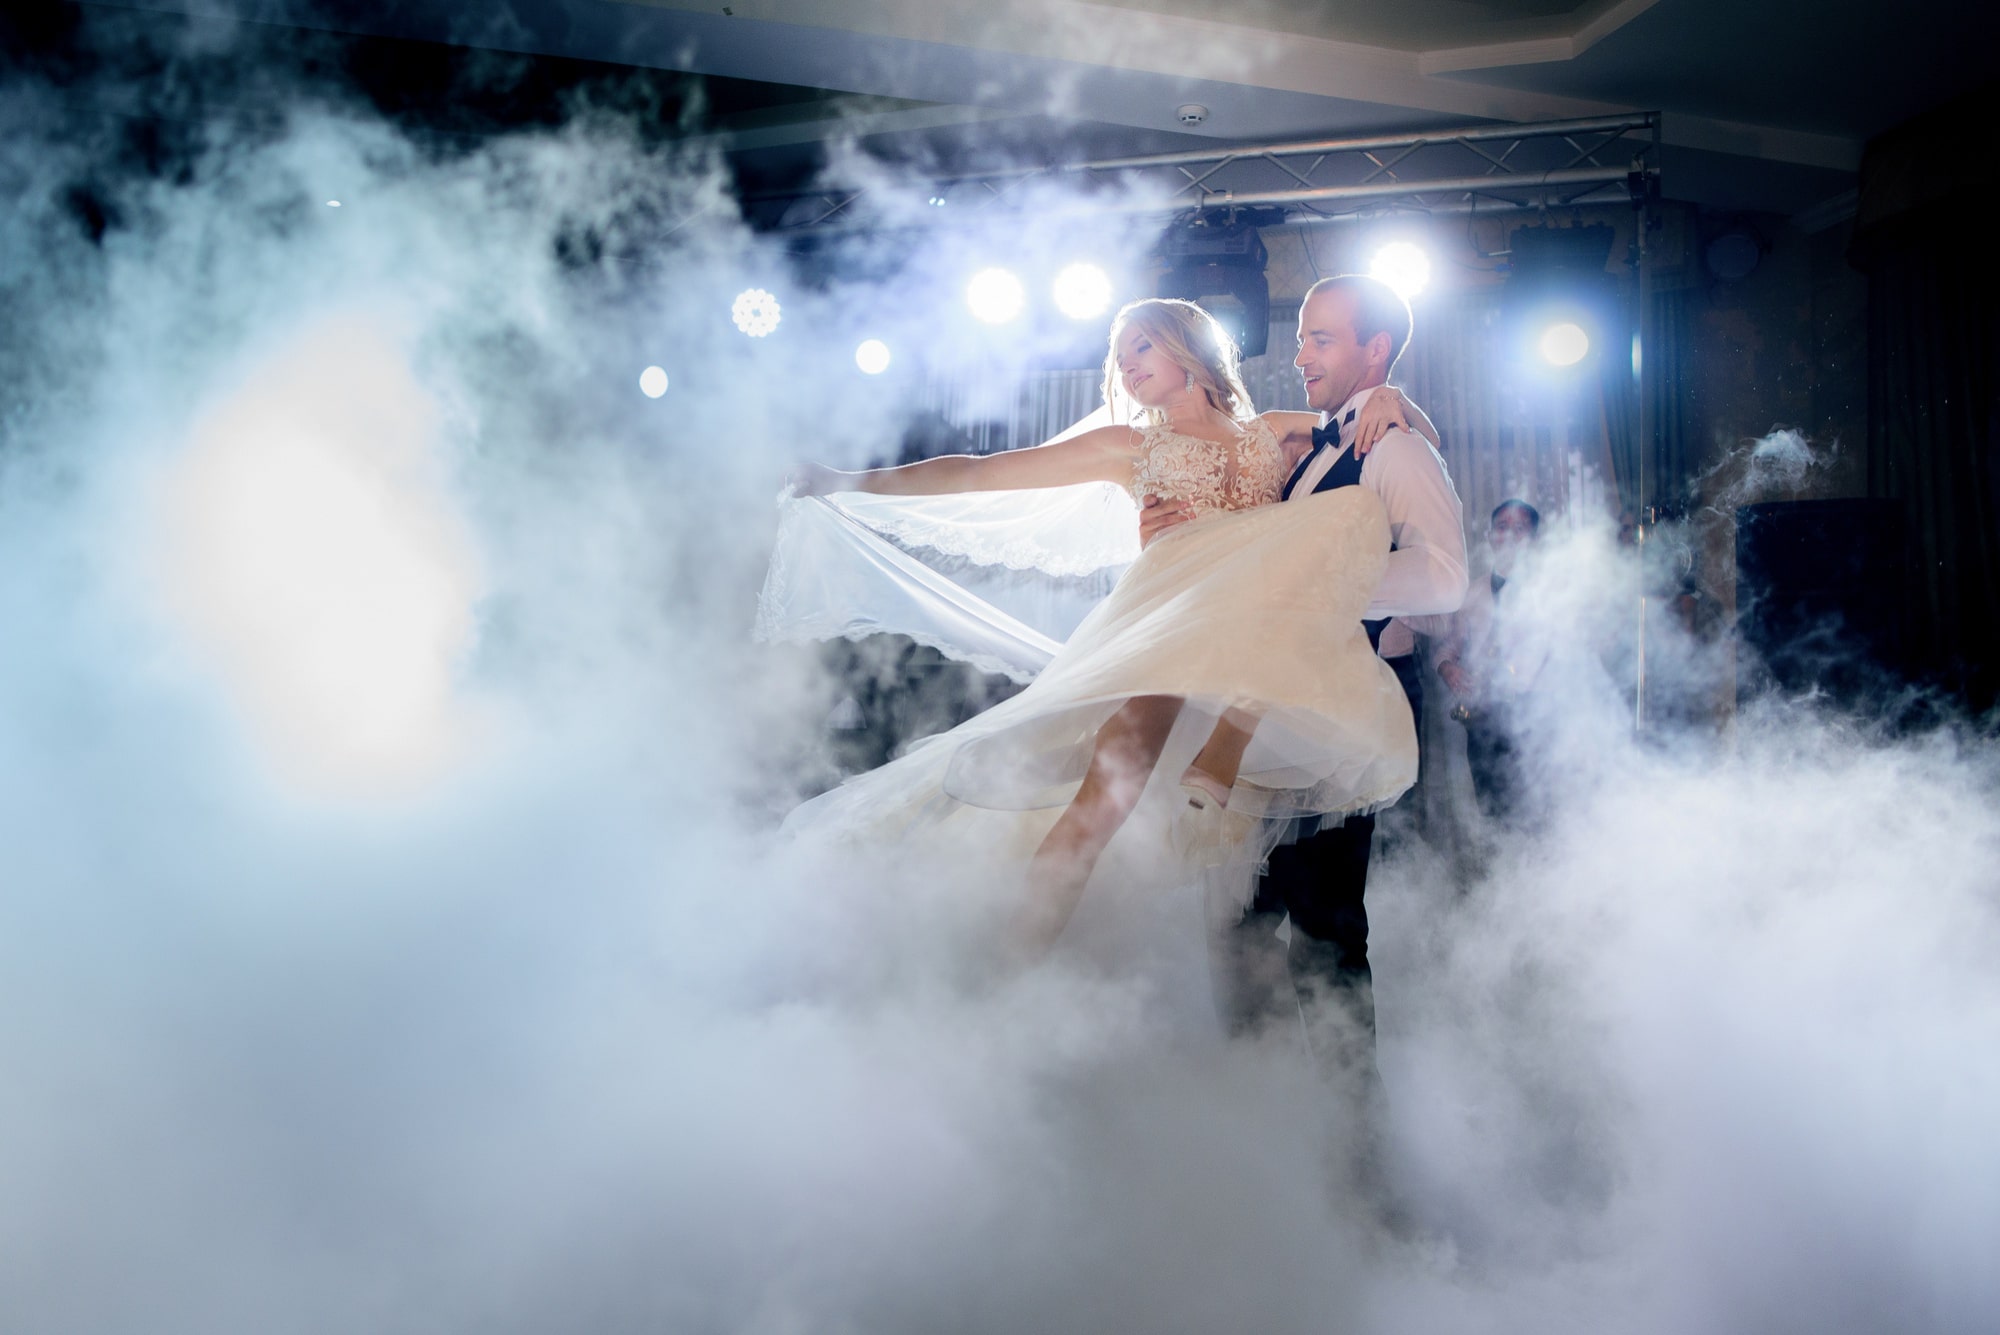 El novio hace girar a la novia en el baile del humo durante la boda